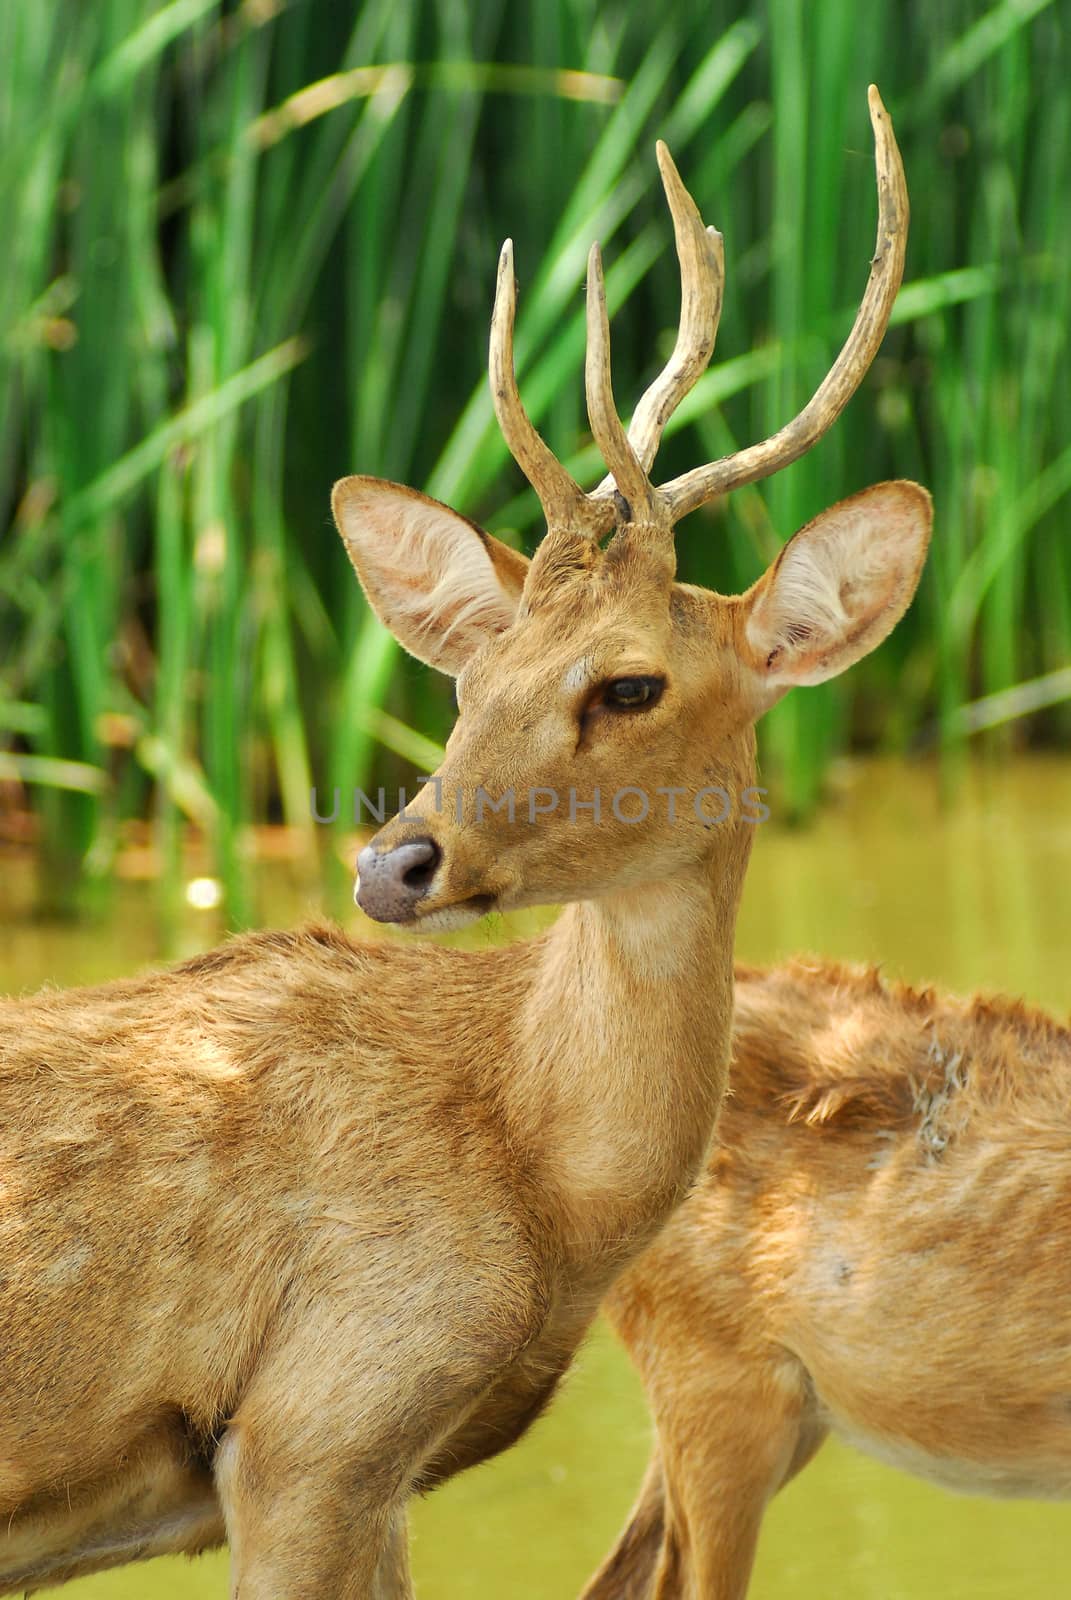 Siamese Eld's deers by think4photop